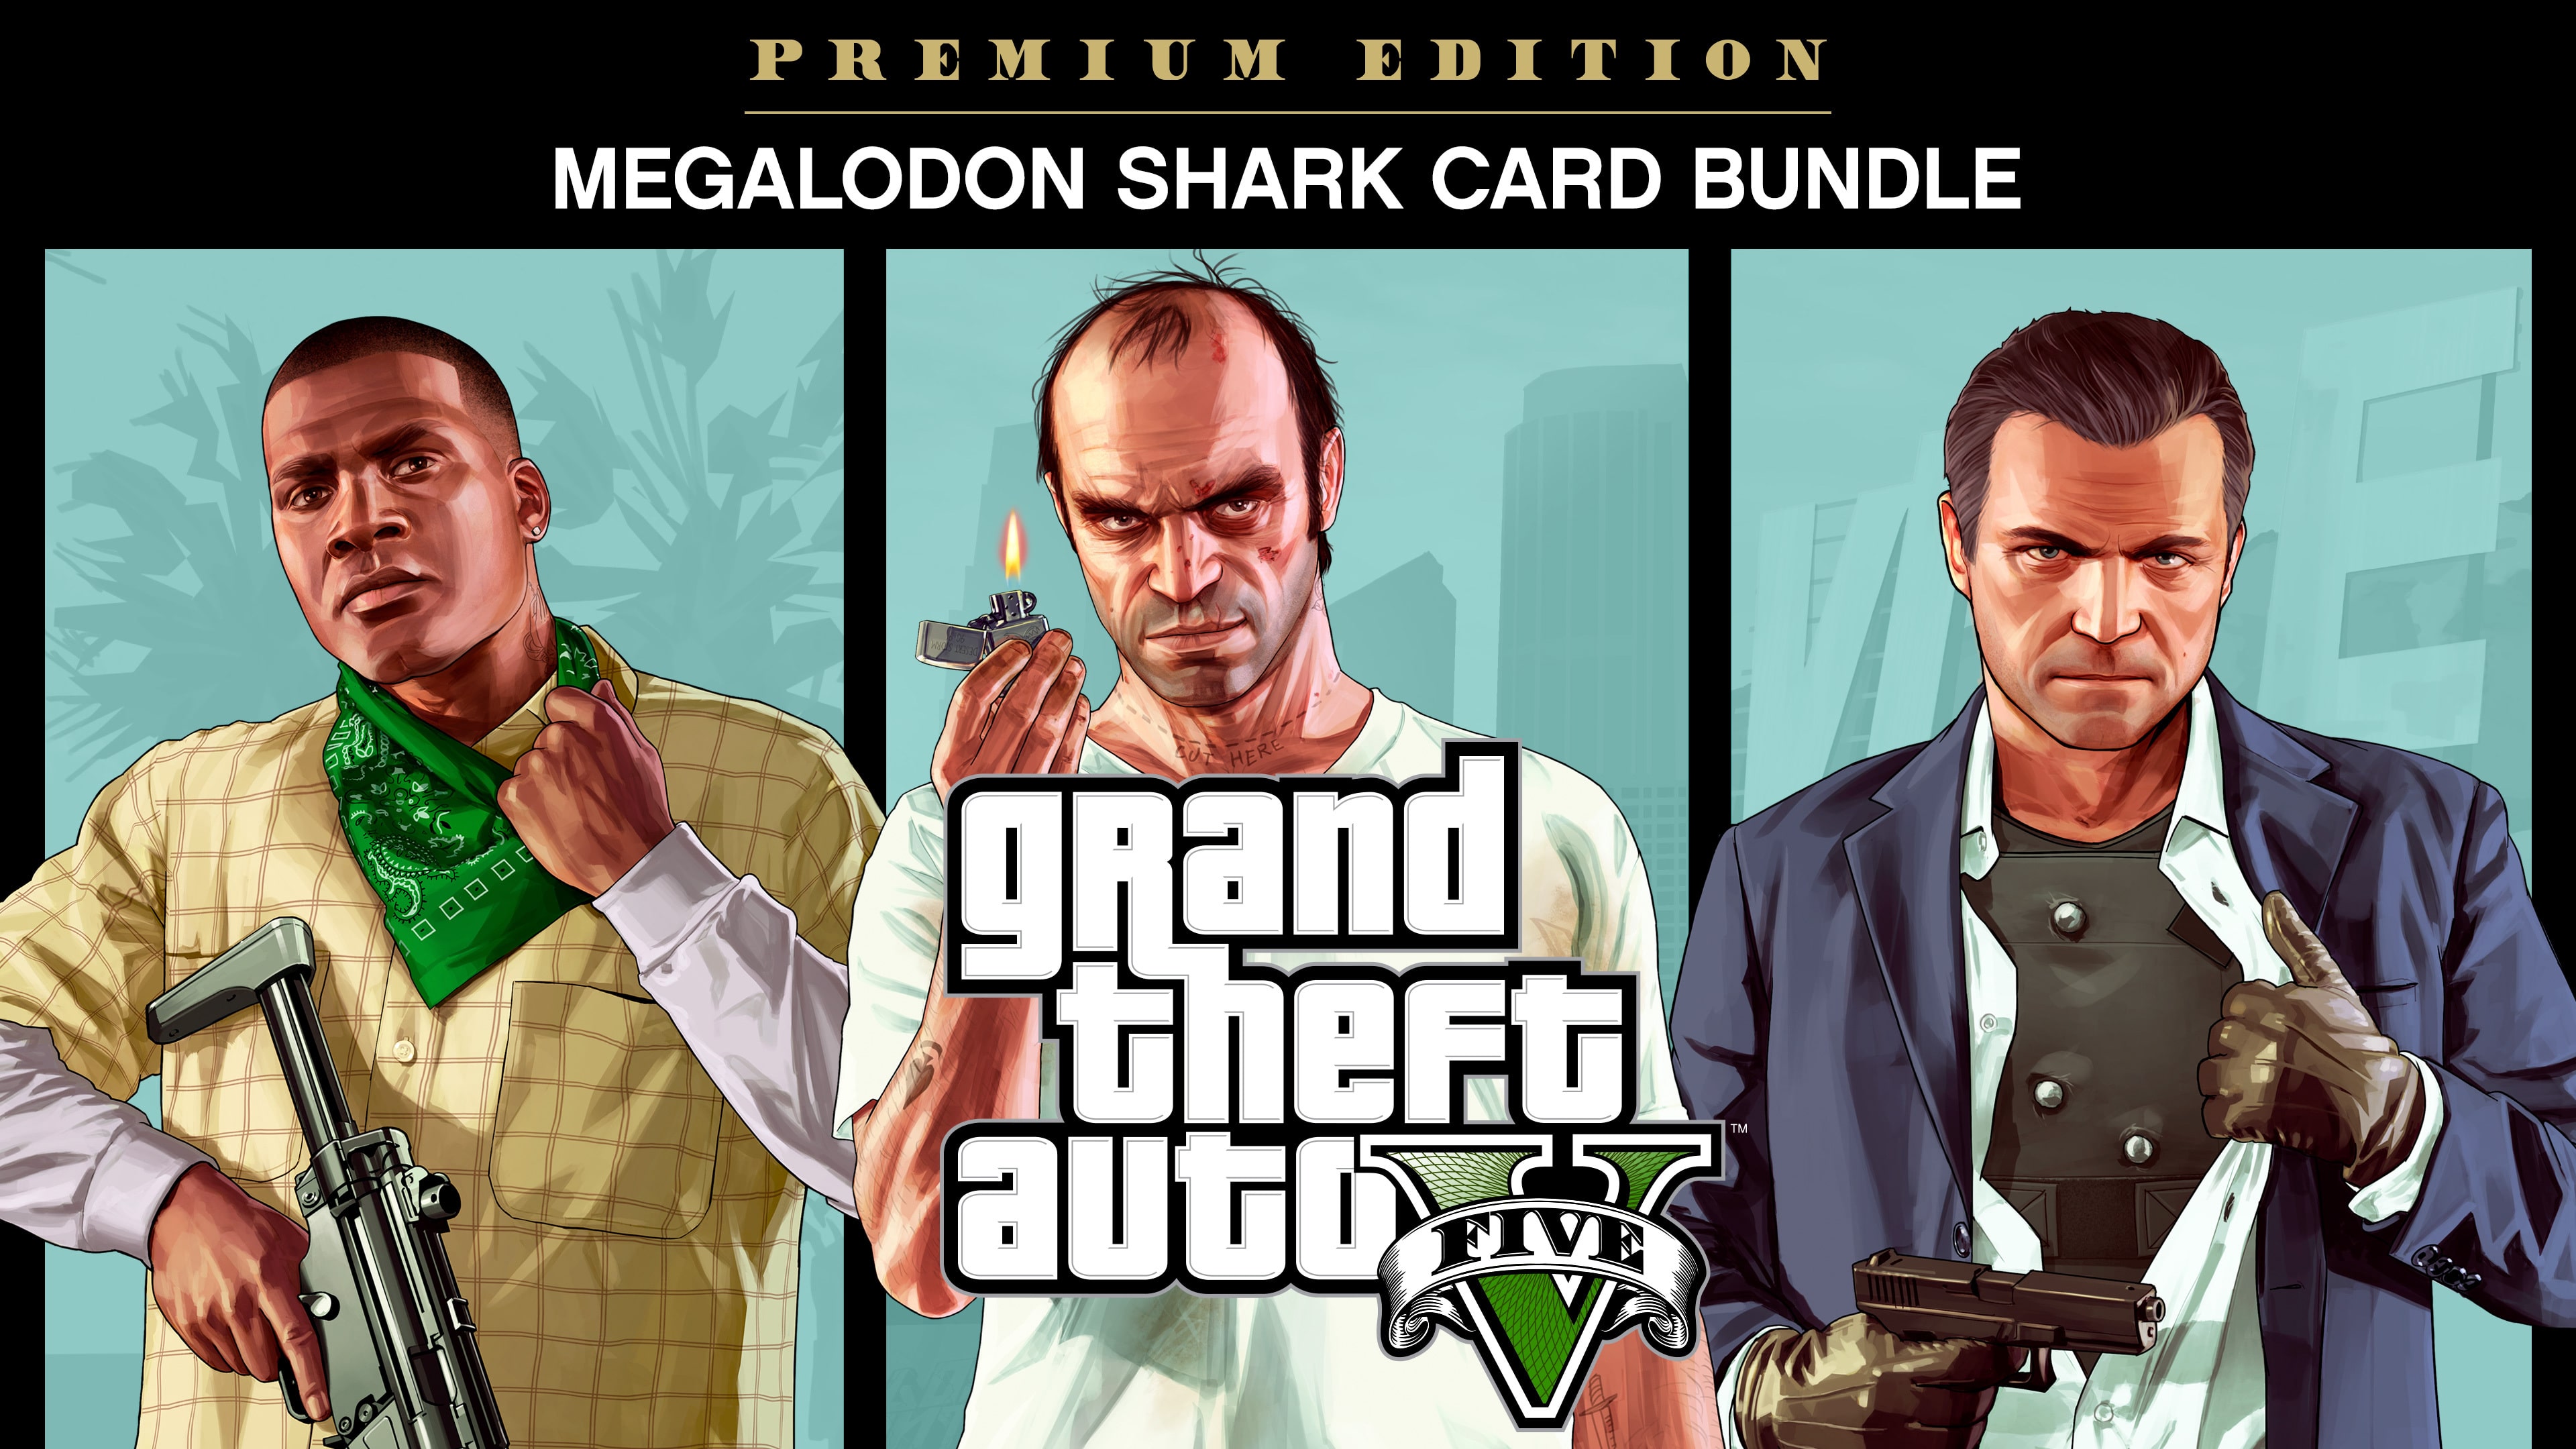 Pacchetto Grand Theft Auto V: Premium Edition + carta prepagata Megalodon shark